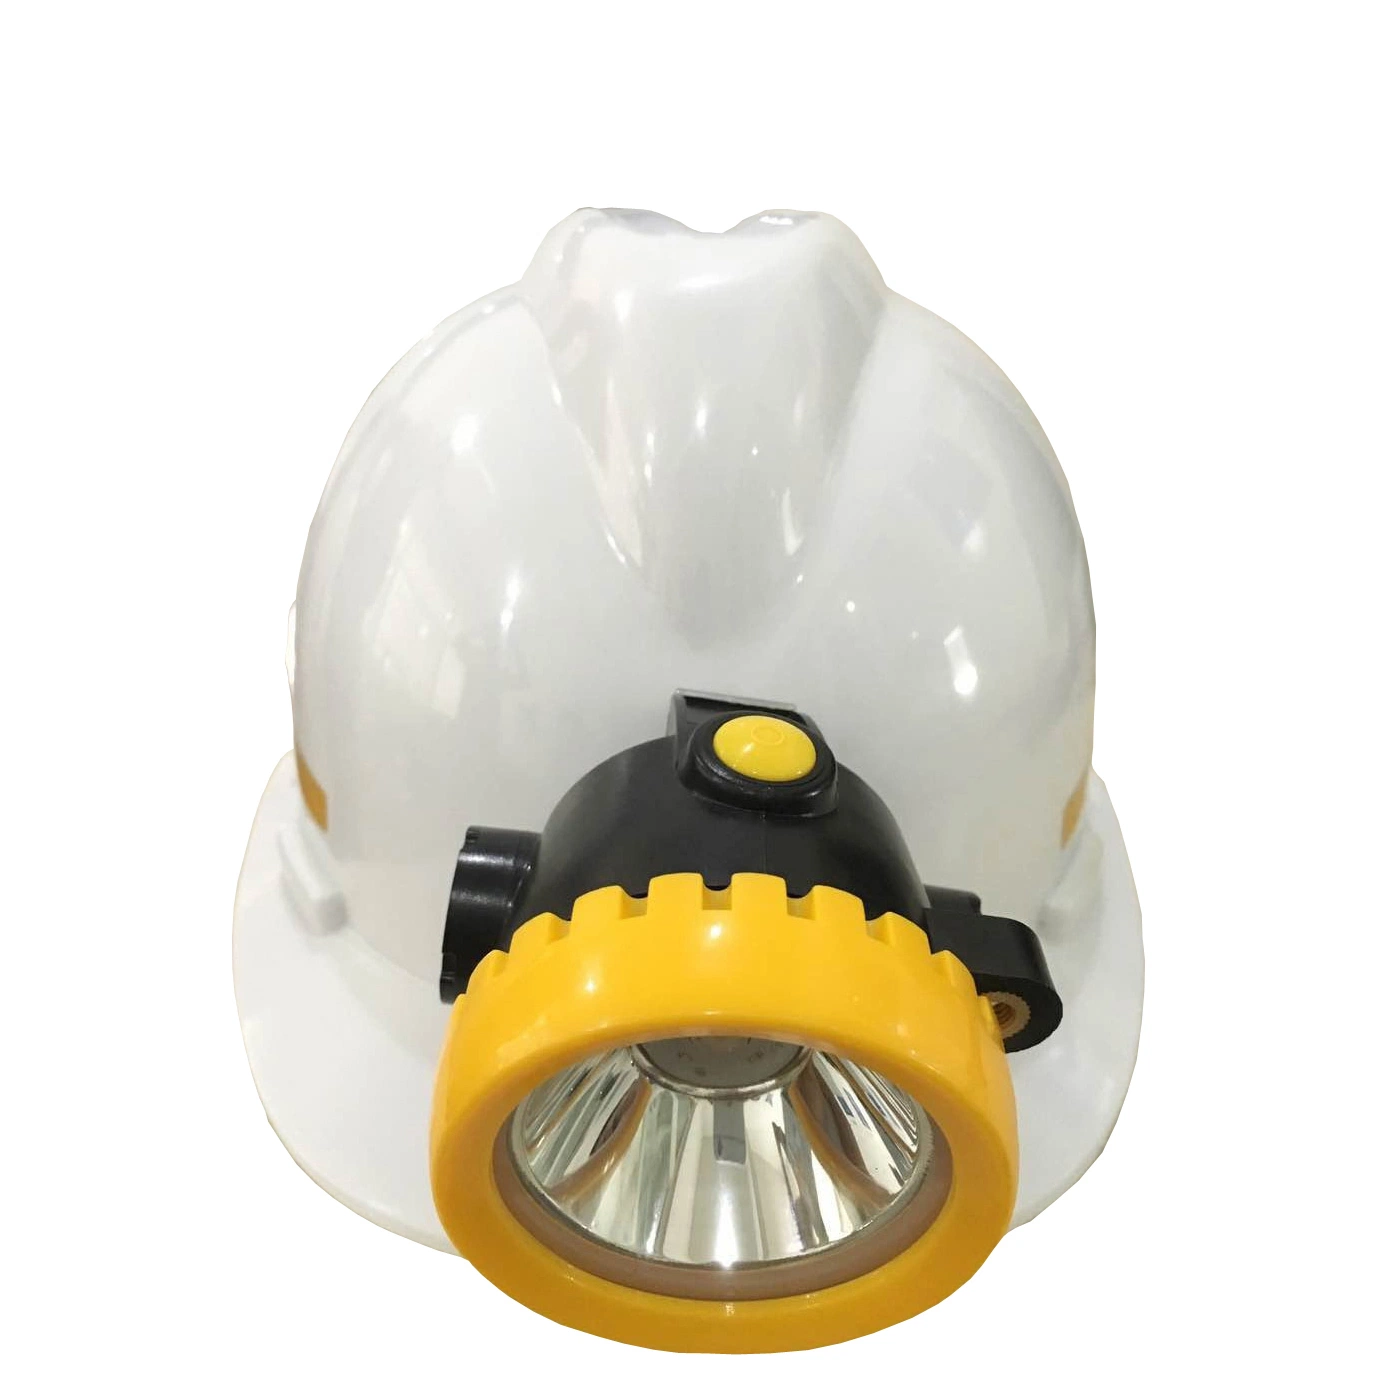 Kl1.2ex Lampe de mineur sans fil rechargeable à LED pour l'éclairage de casque dans les mines de charbon souterraines.